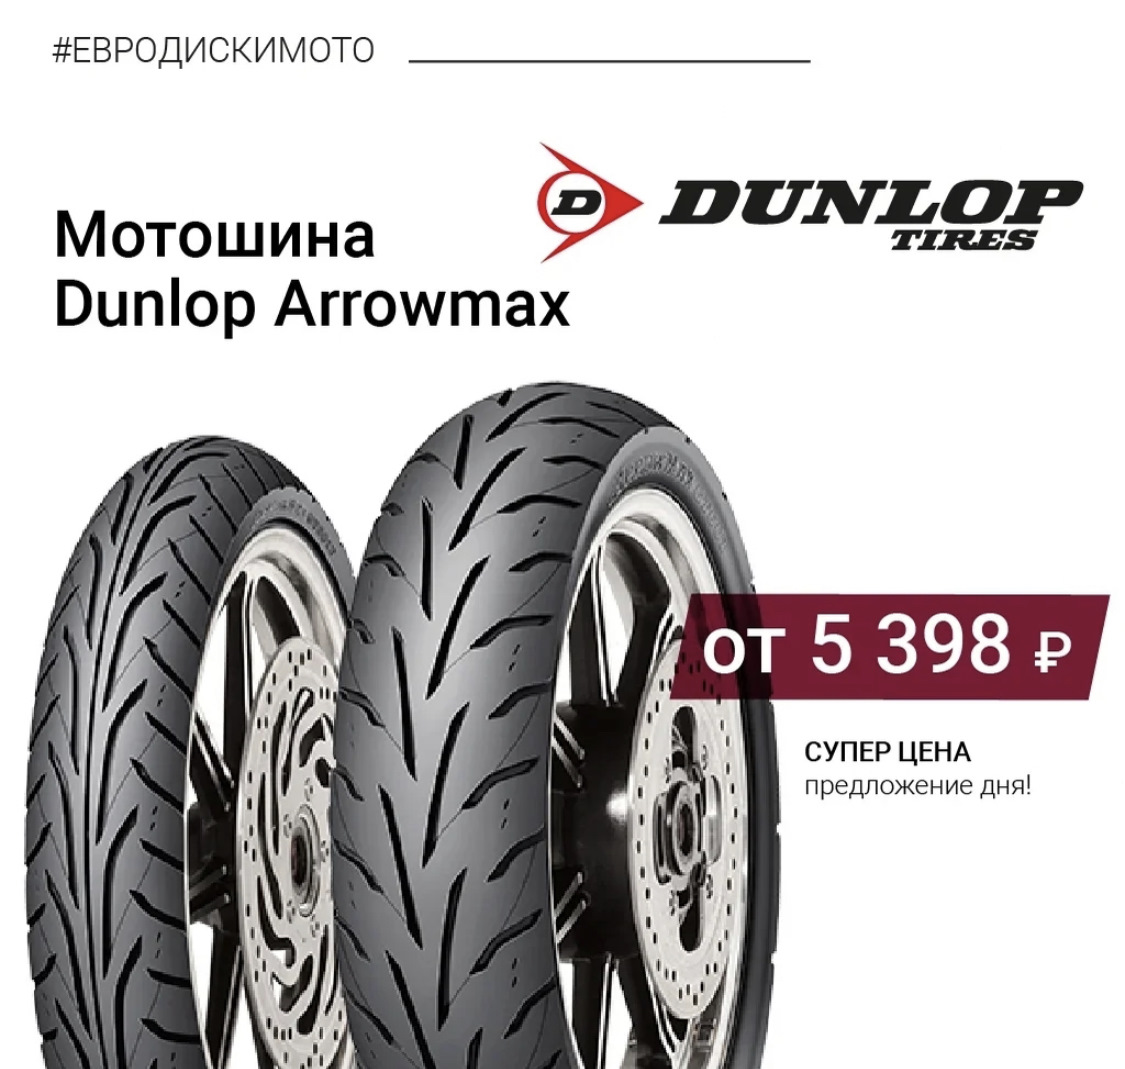 Евро диски отзывы о магазине. Dunlop Arrowmax gt501. Dunlop Arrowmax. Euro-diski. Arrowmax as-13.